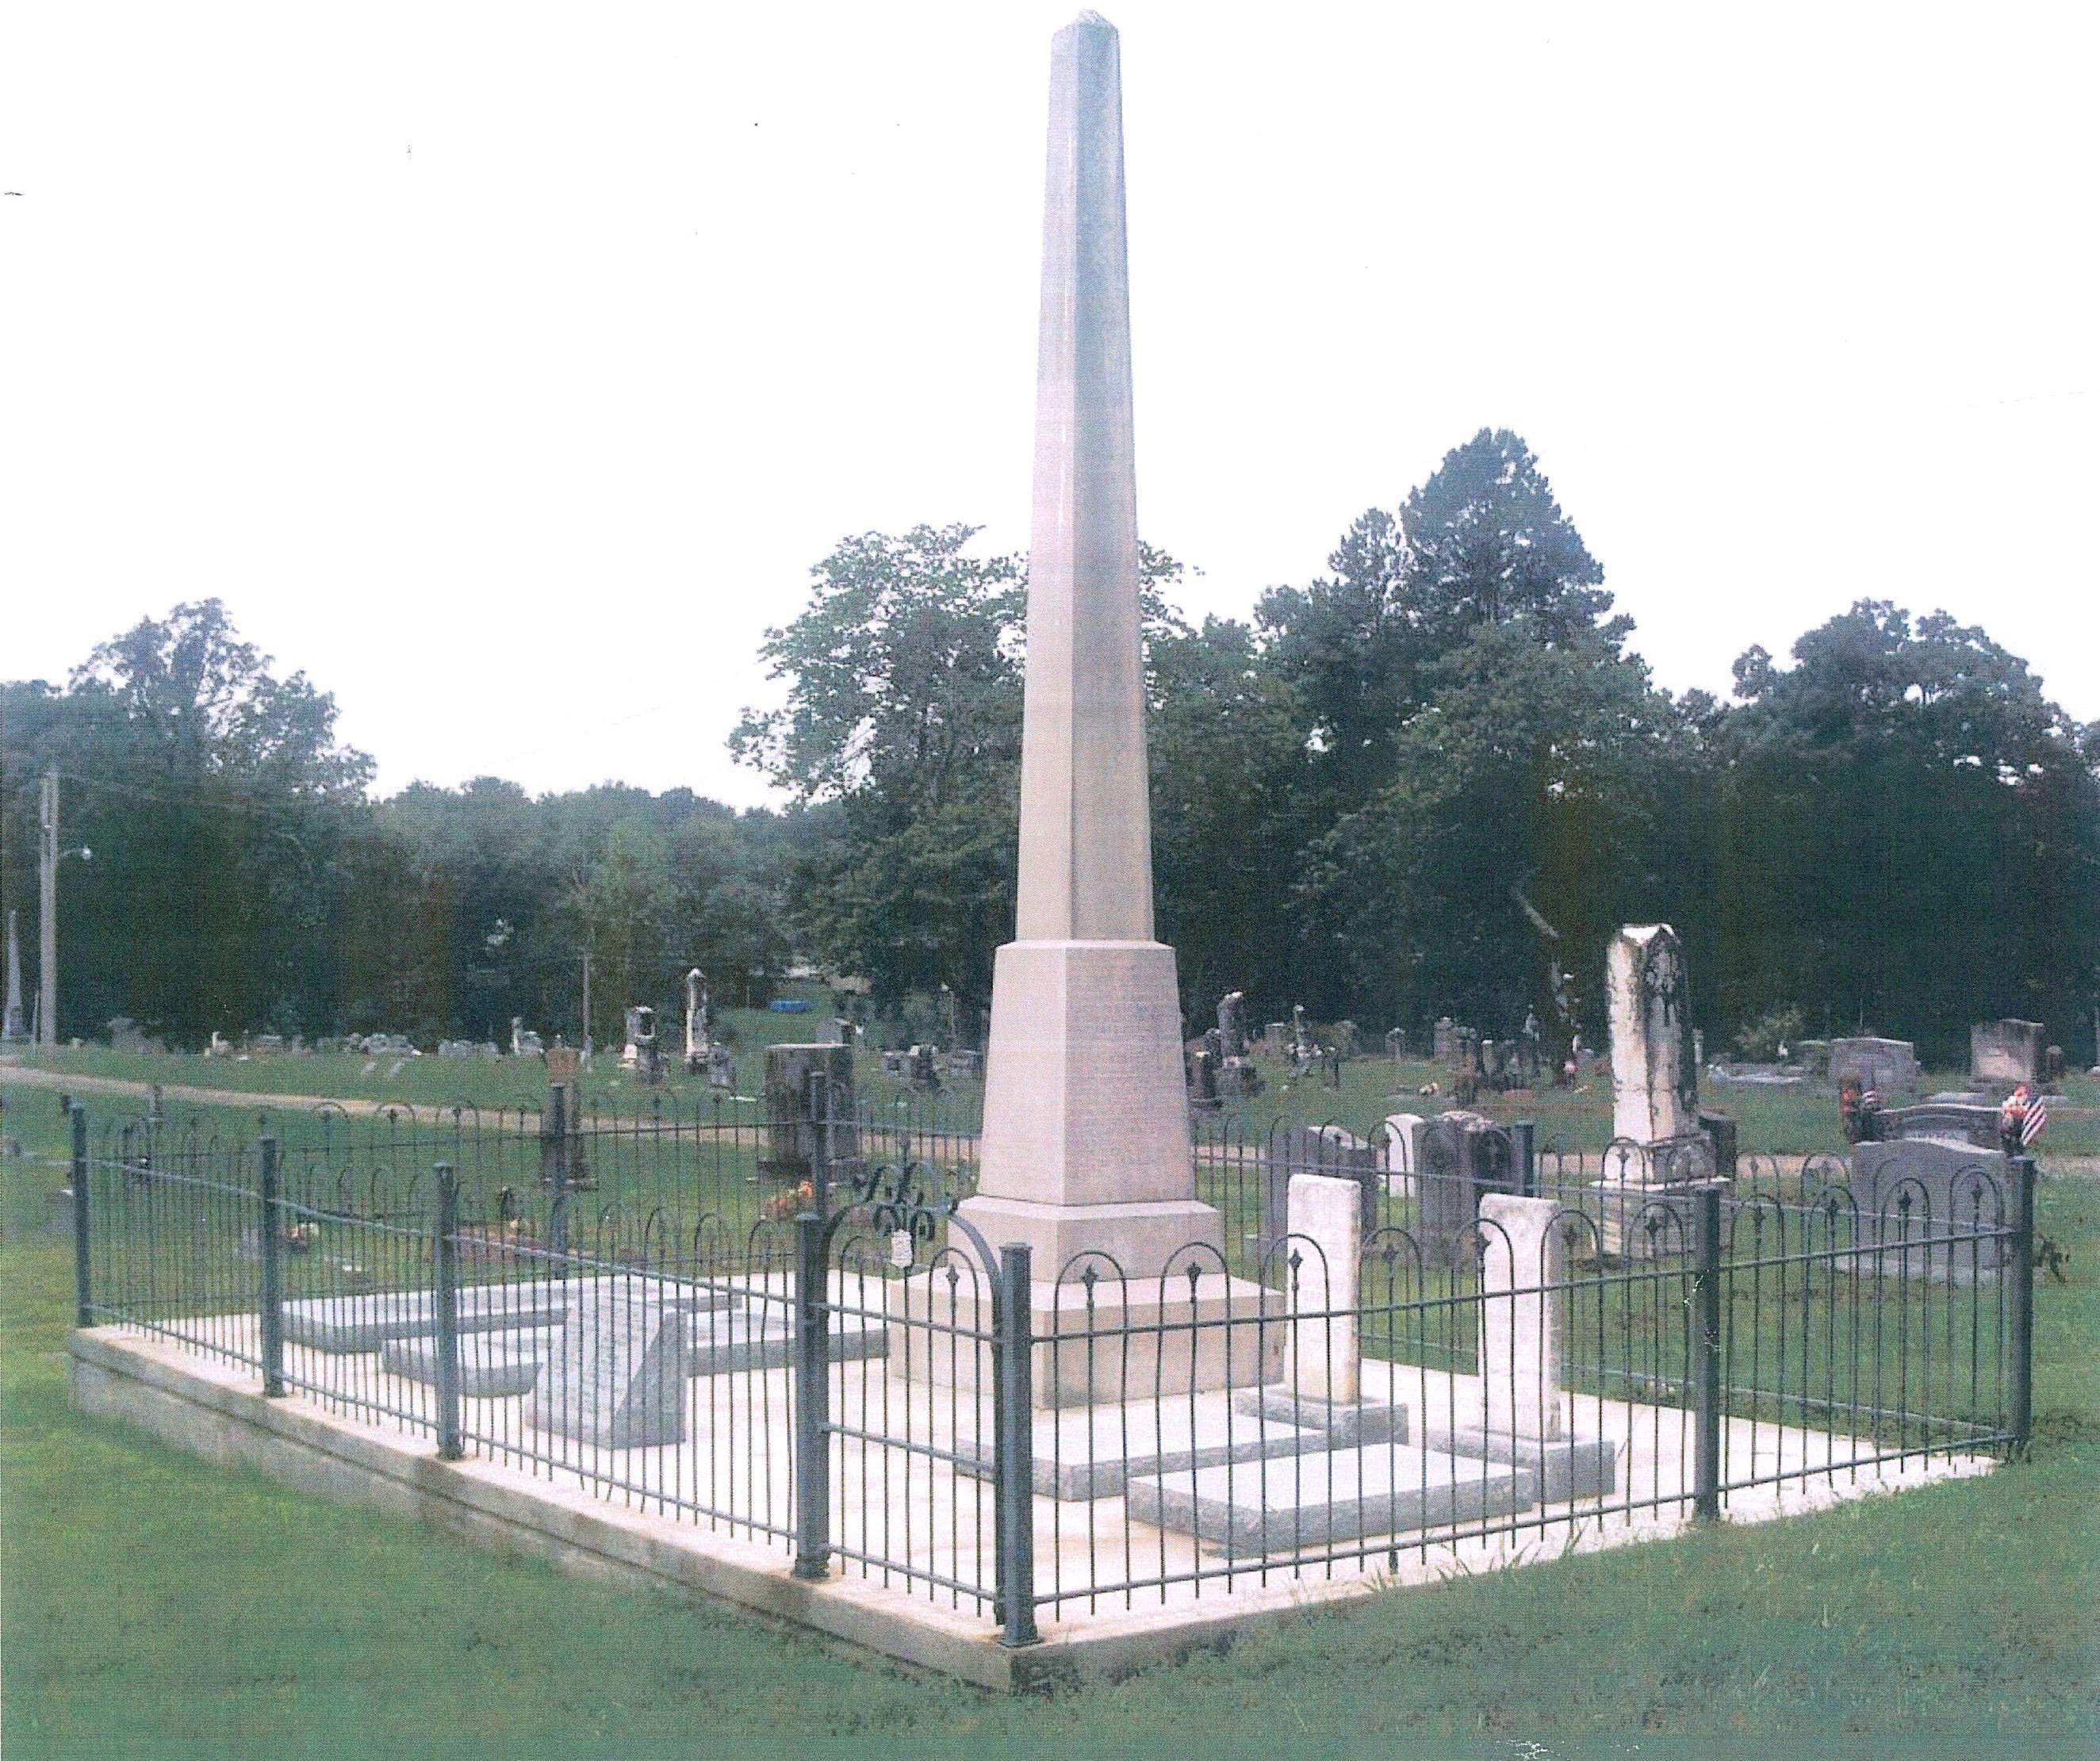 The Founders Memorial in Pocahontas, Arkansas